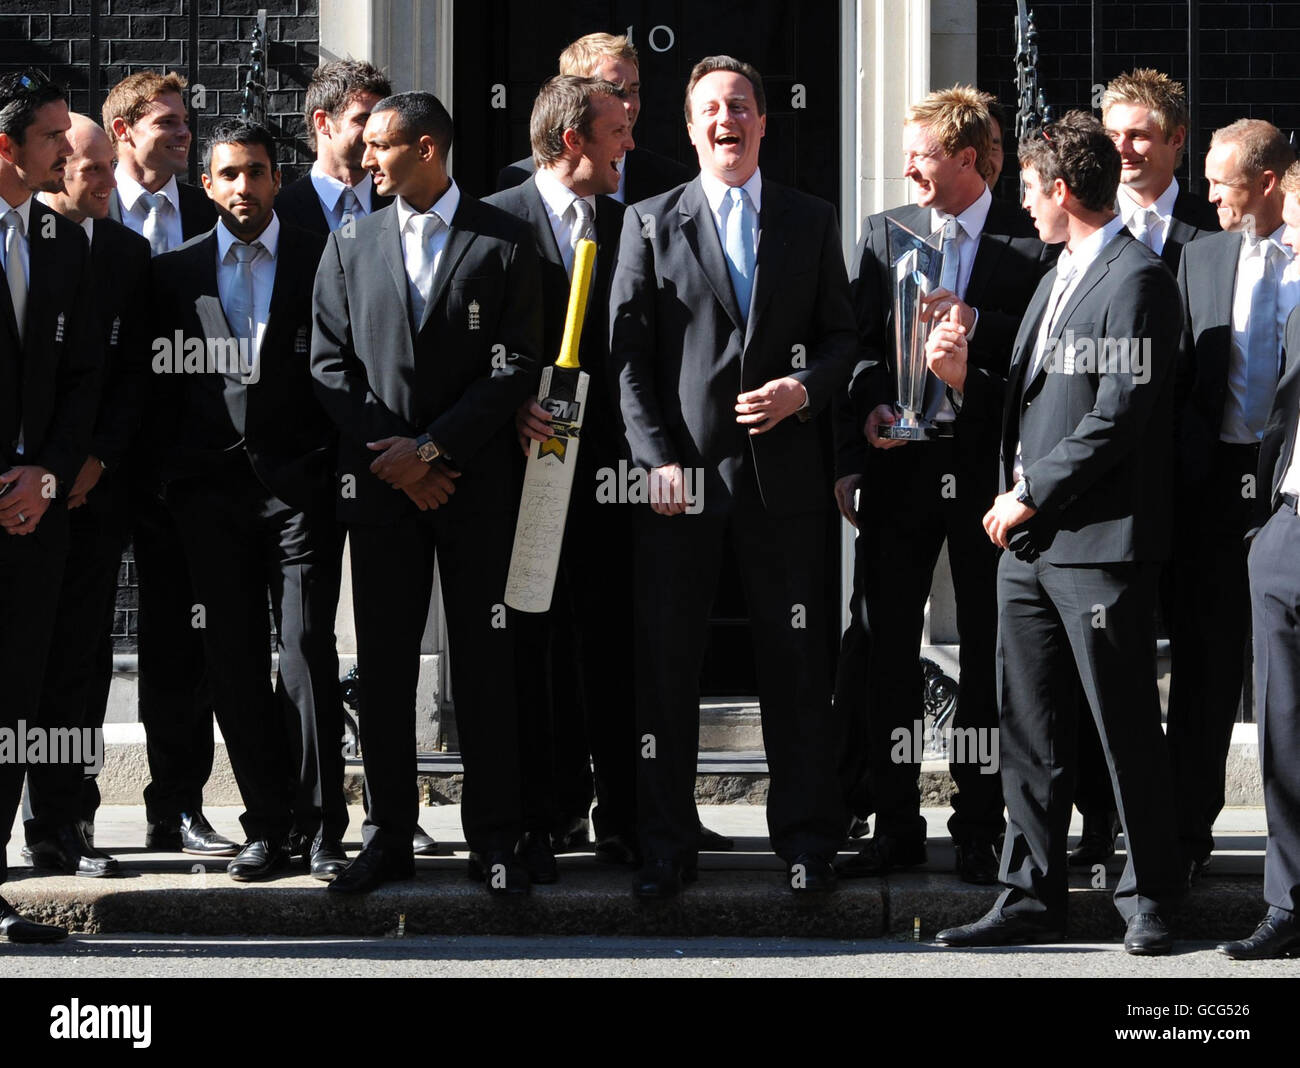 Le Premier ministre David Cameron rencontre l'équipe de cricket de l'Angleterre 20/20 à l'extérieur du 10 Downing Street, dans le centre de Londres, à la suite d'une réception pour célébrer leur victoire. Banque D'Images